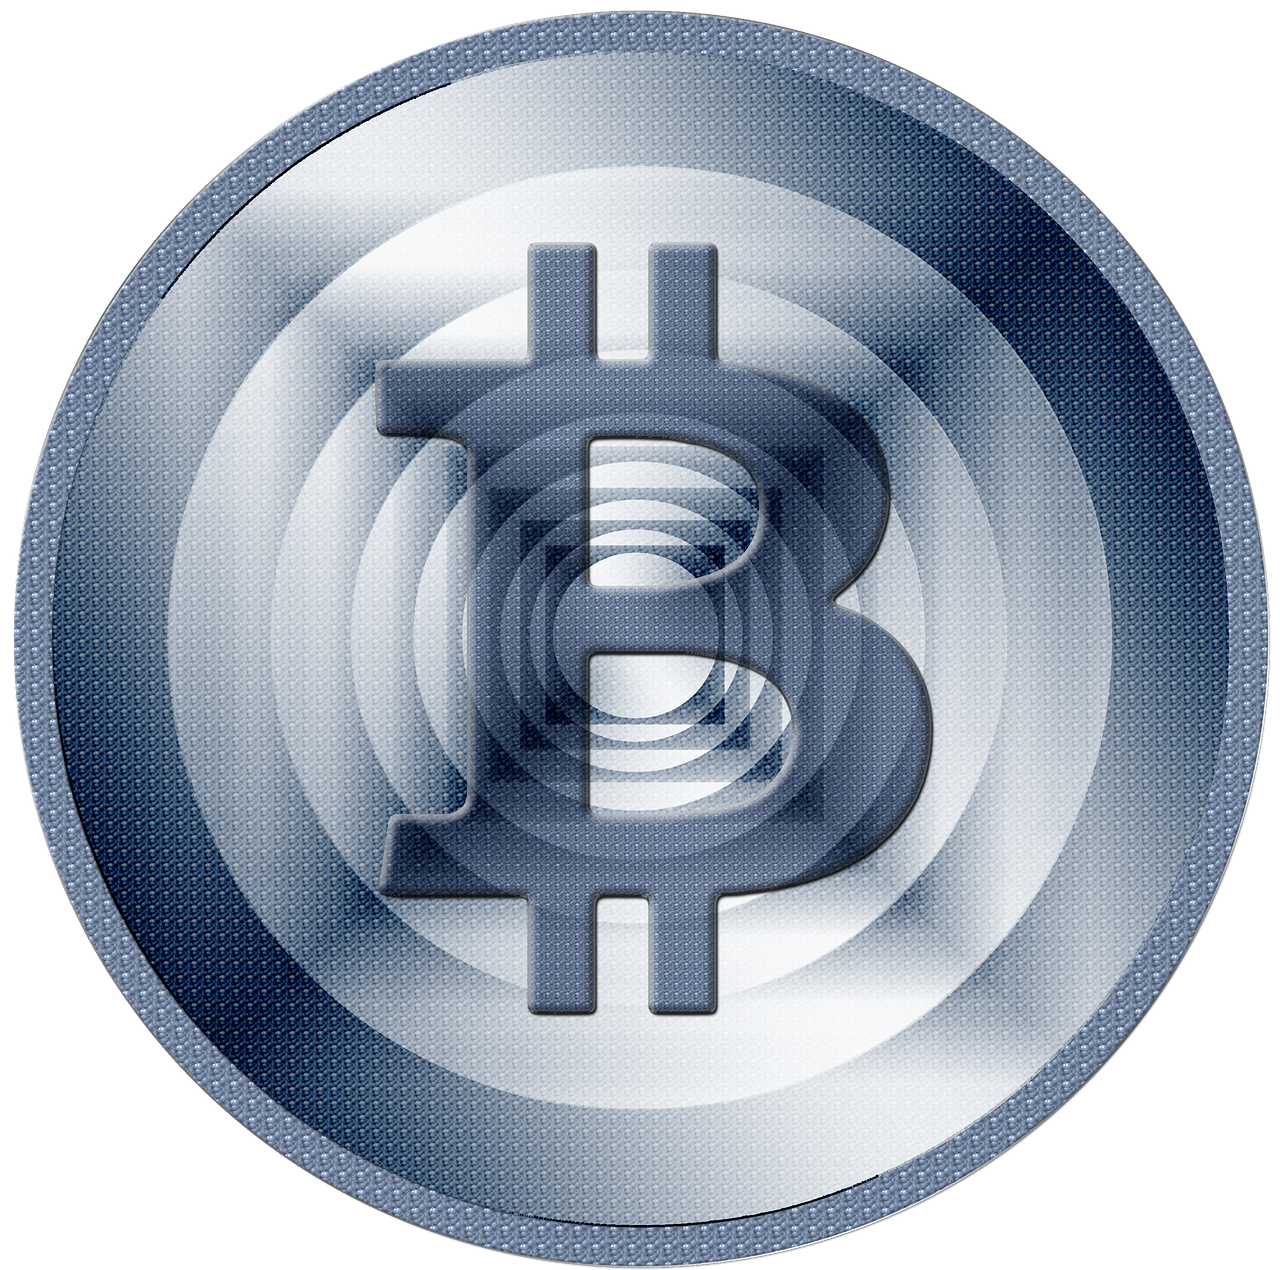 bitcoin coin money free photo